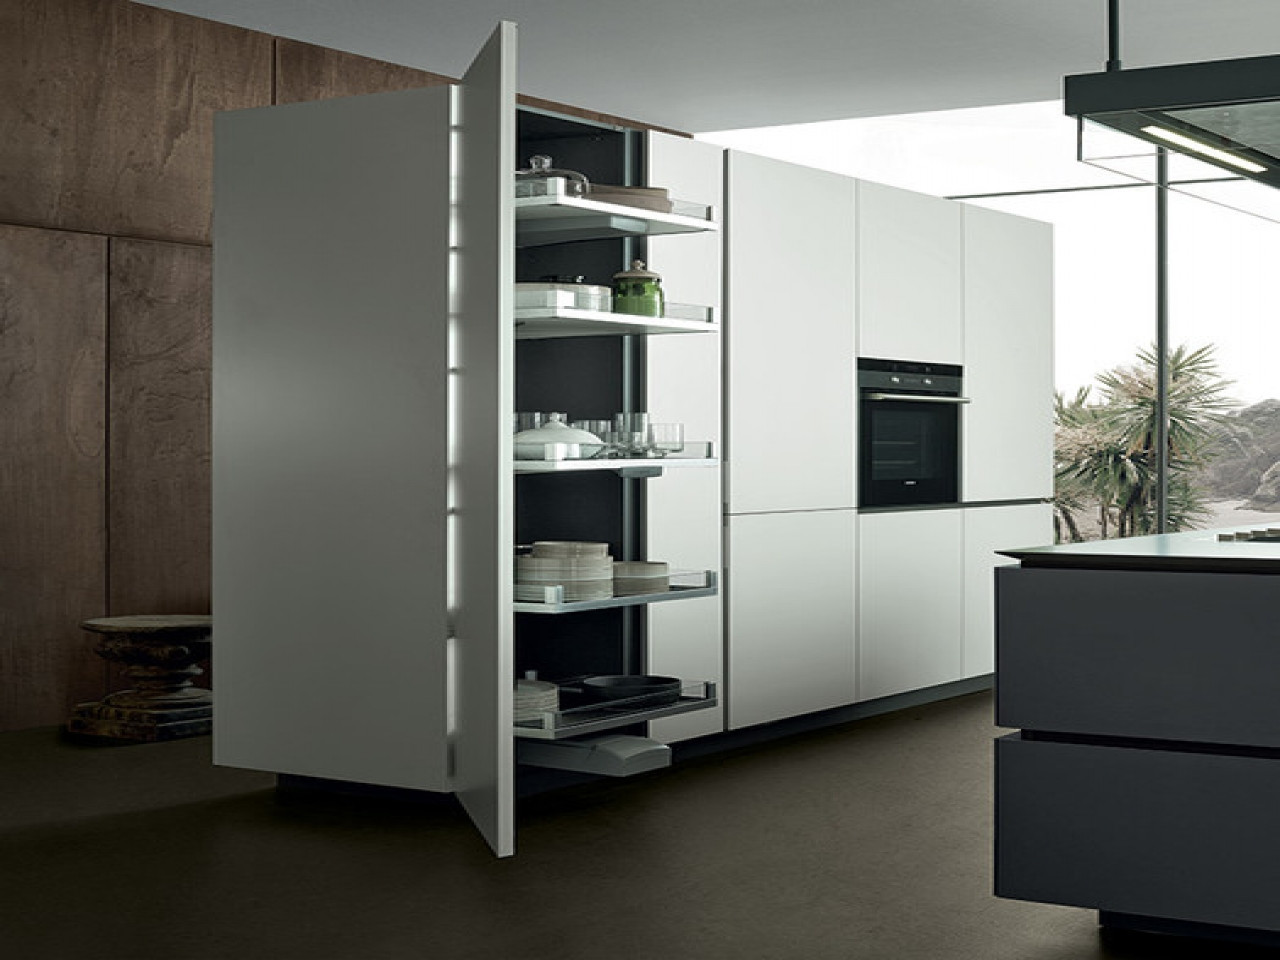 Ikea Tall Kitchen Cabinet
 Coastal kitchen with cherry cabinets ikea tall kitchen